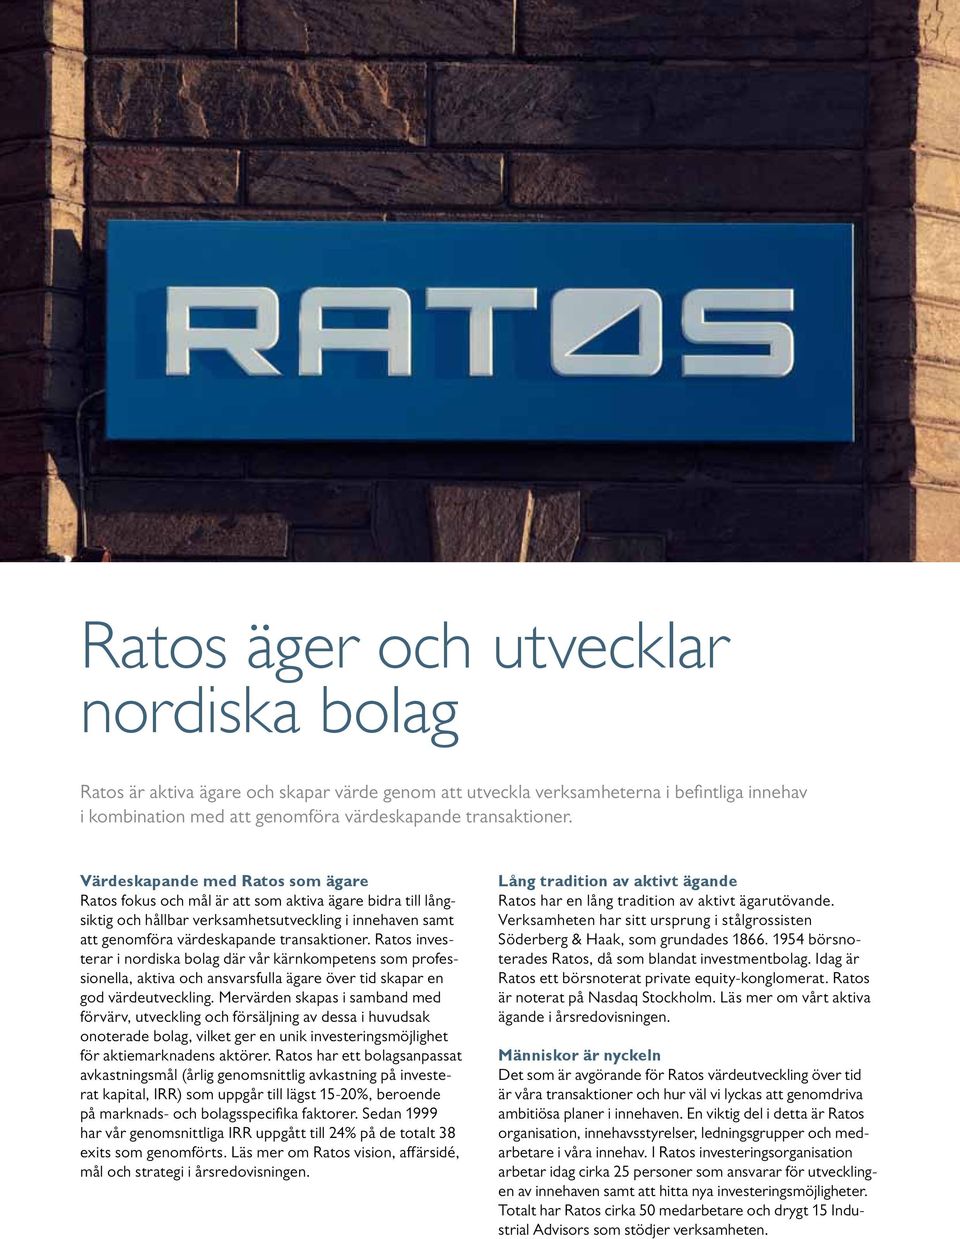 Ratos investerar i nordiska bolag där vår kärnkompetens som professionella, aktiva och ansvarsfulla ägare över tid skapar en god värdeutveckling.